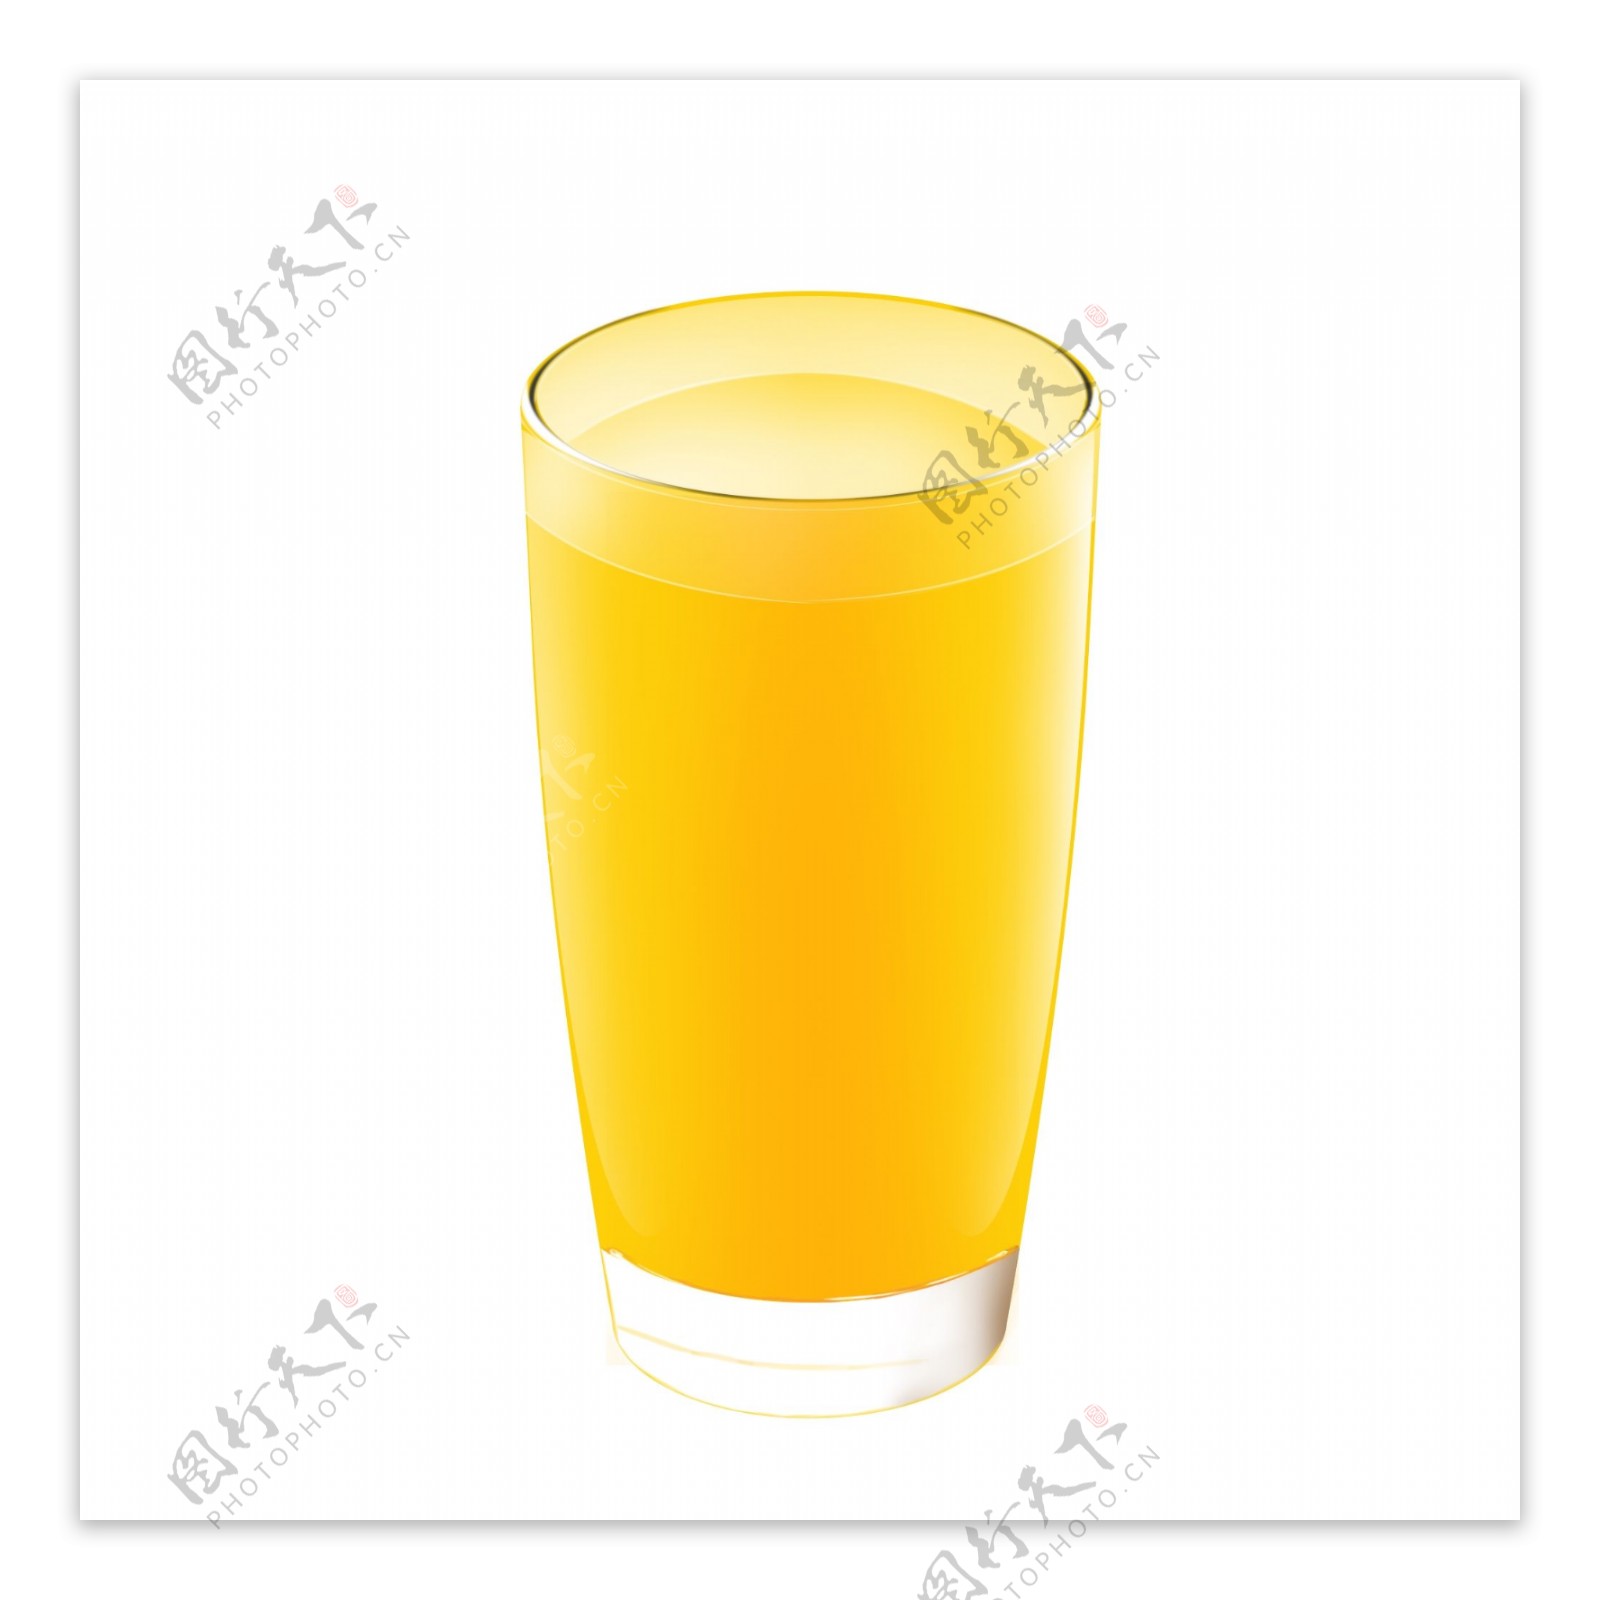 果汁橙汁长杯金黄色竖杯